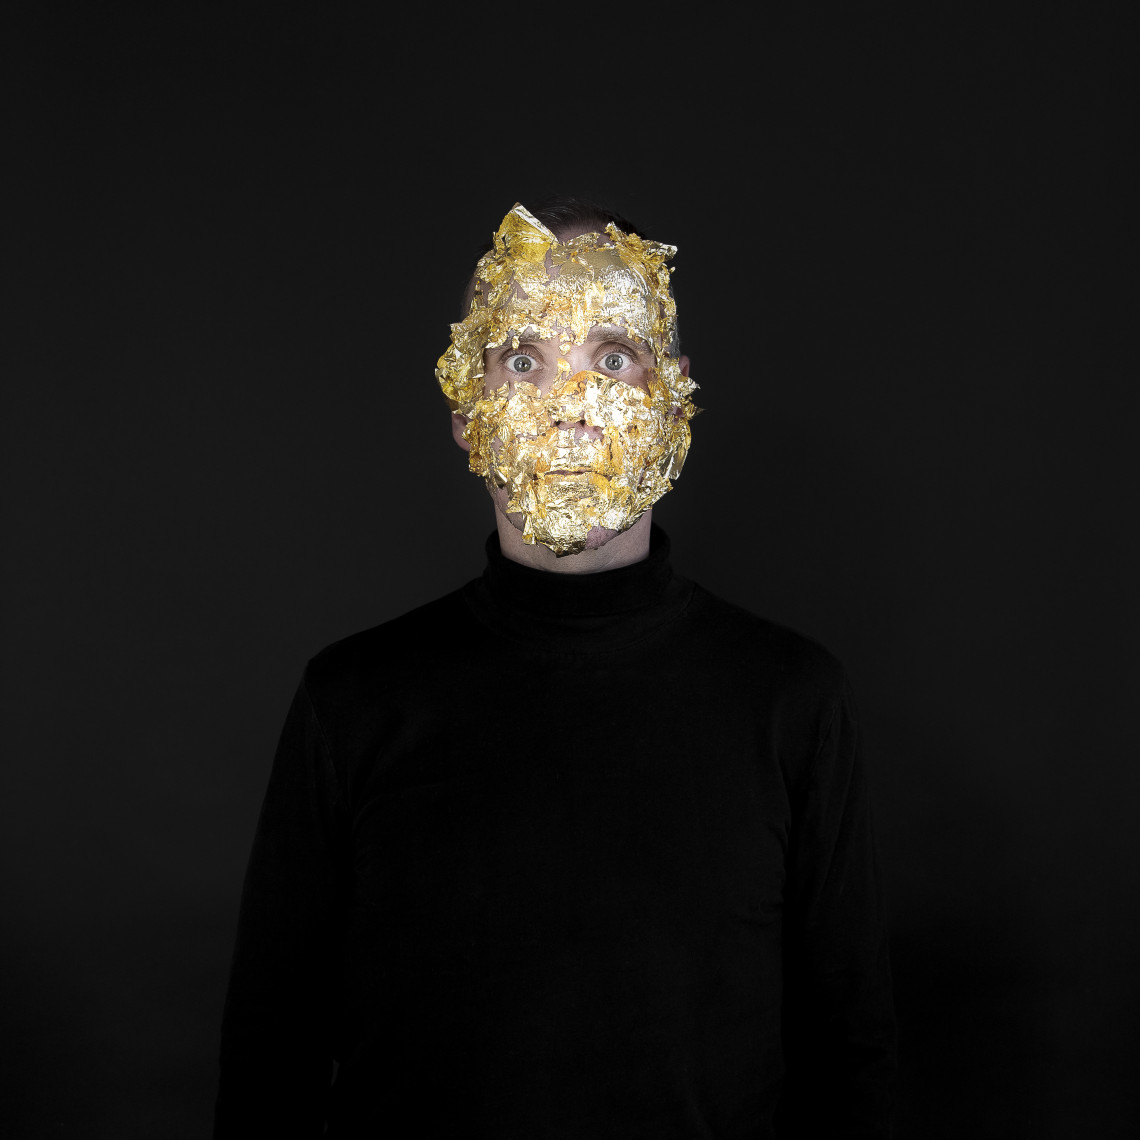  - Steve Giasson en Marina Abramović avec un masque d’or